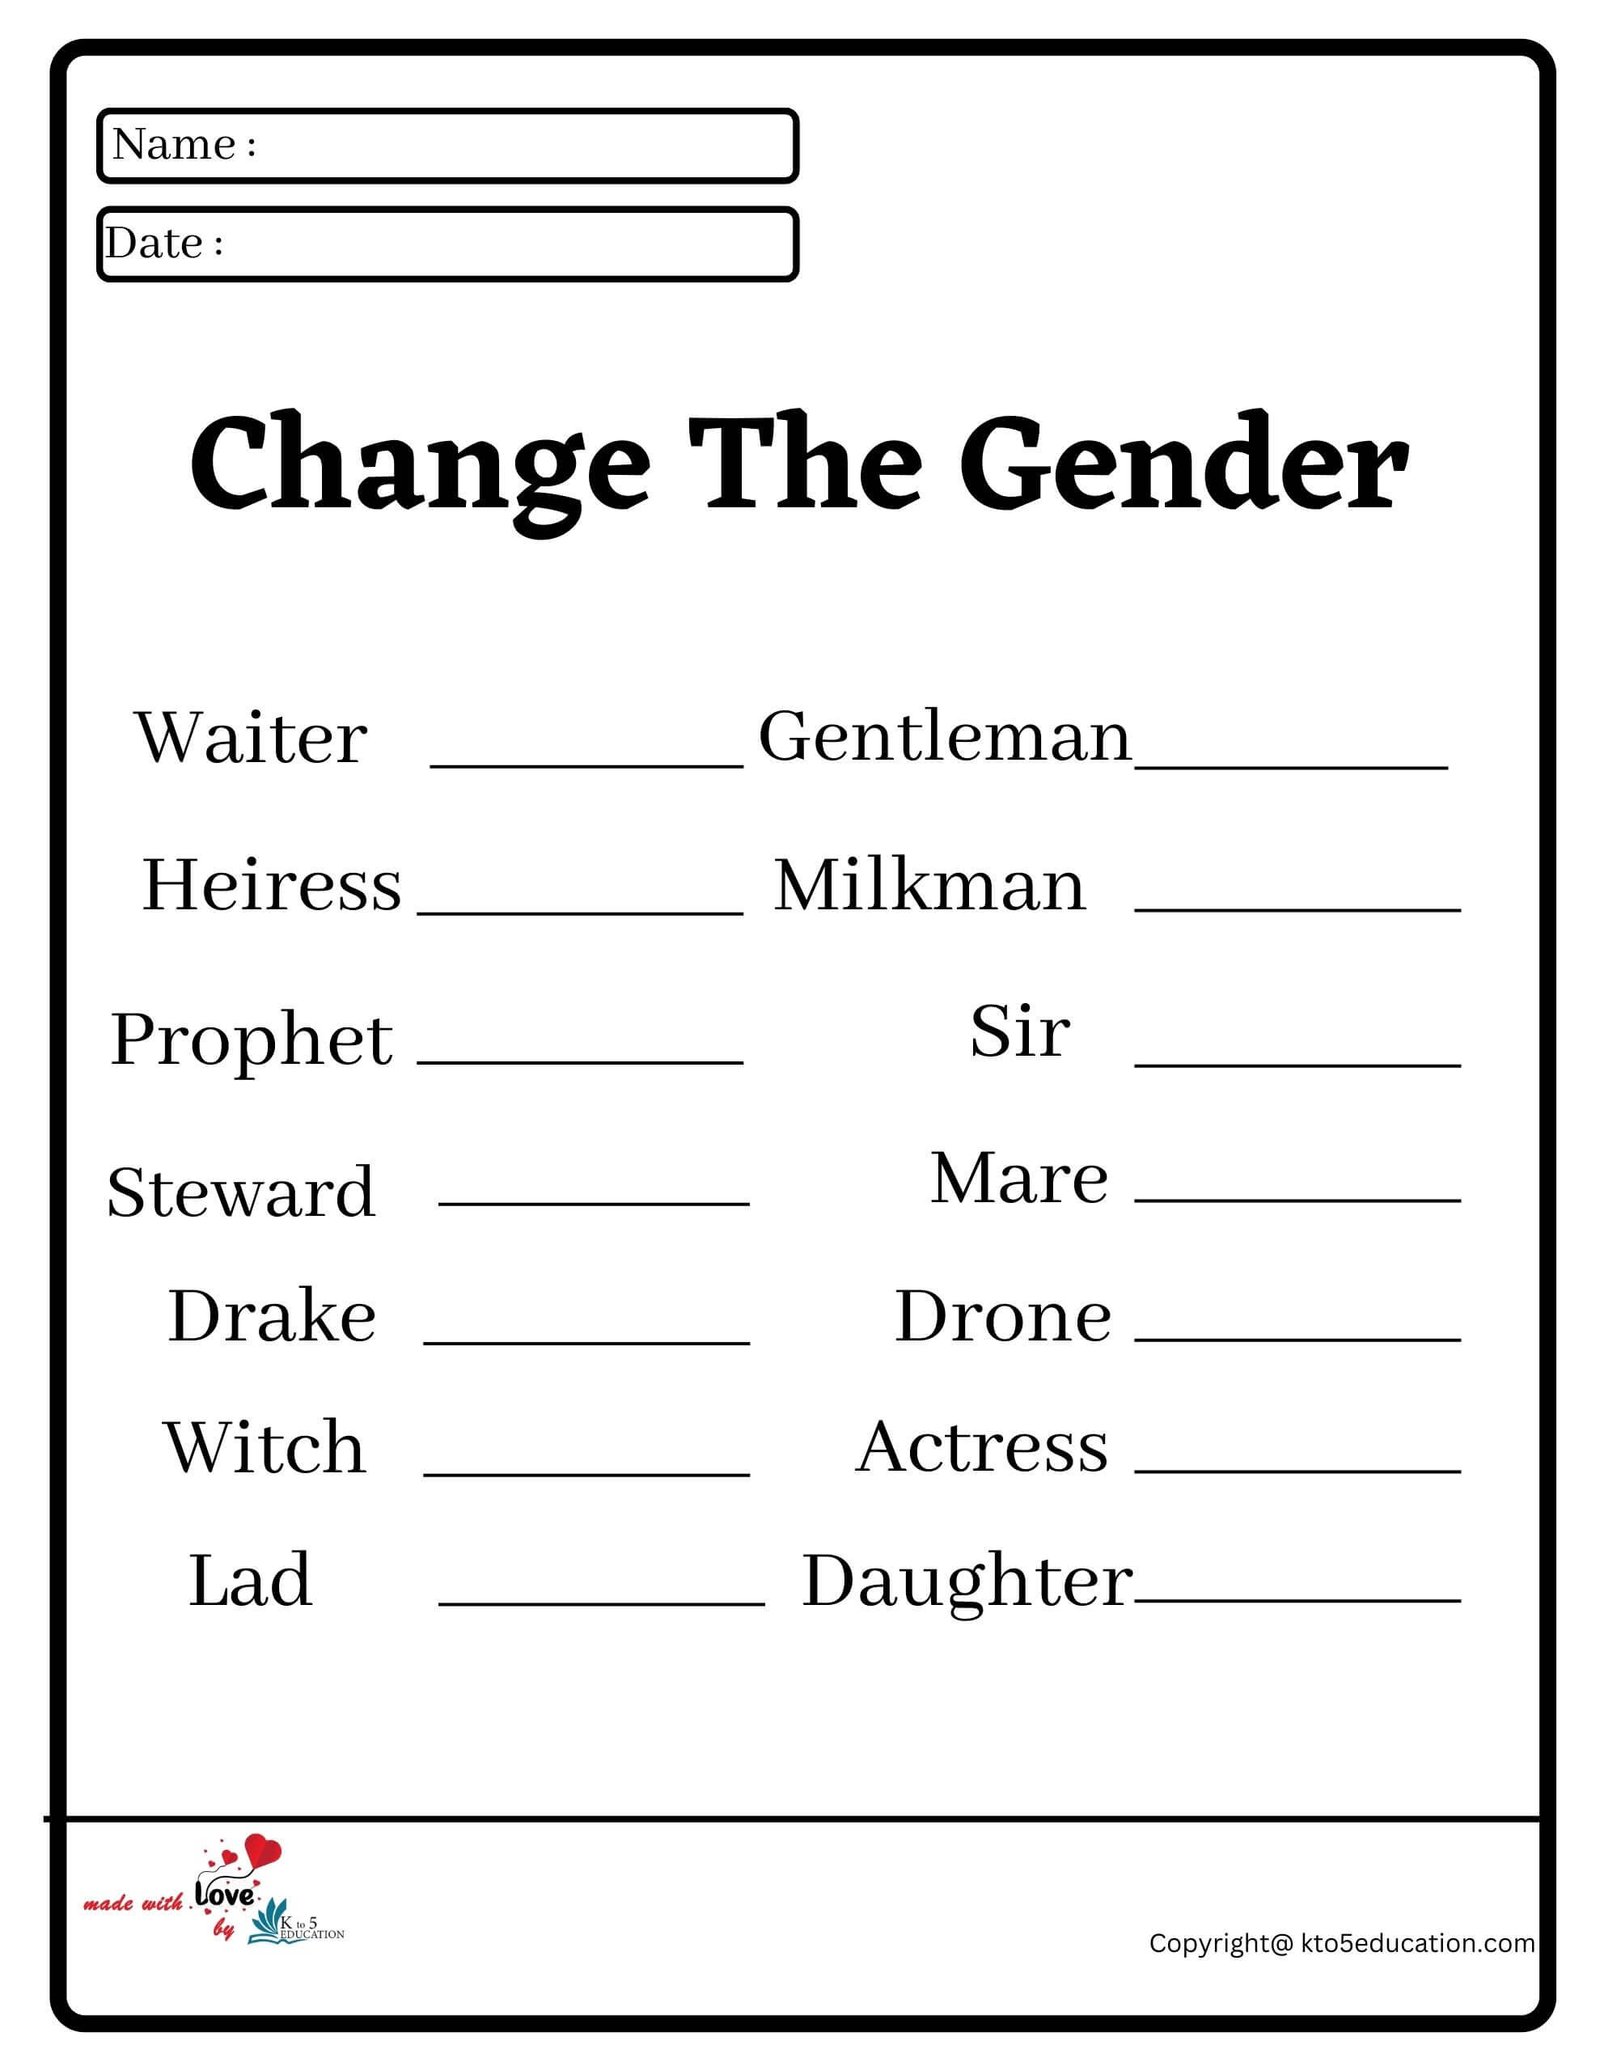 Change The Gender Worksheet